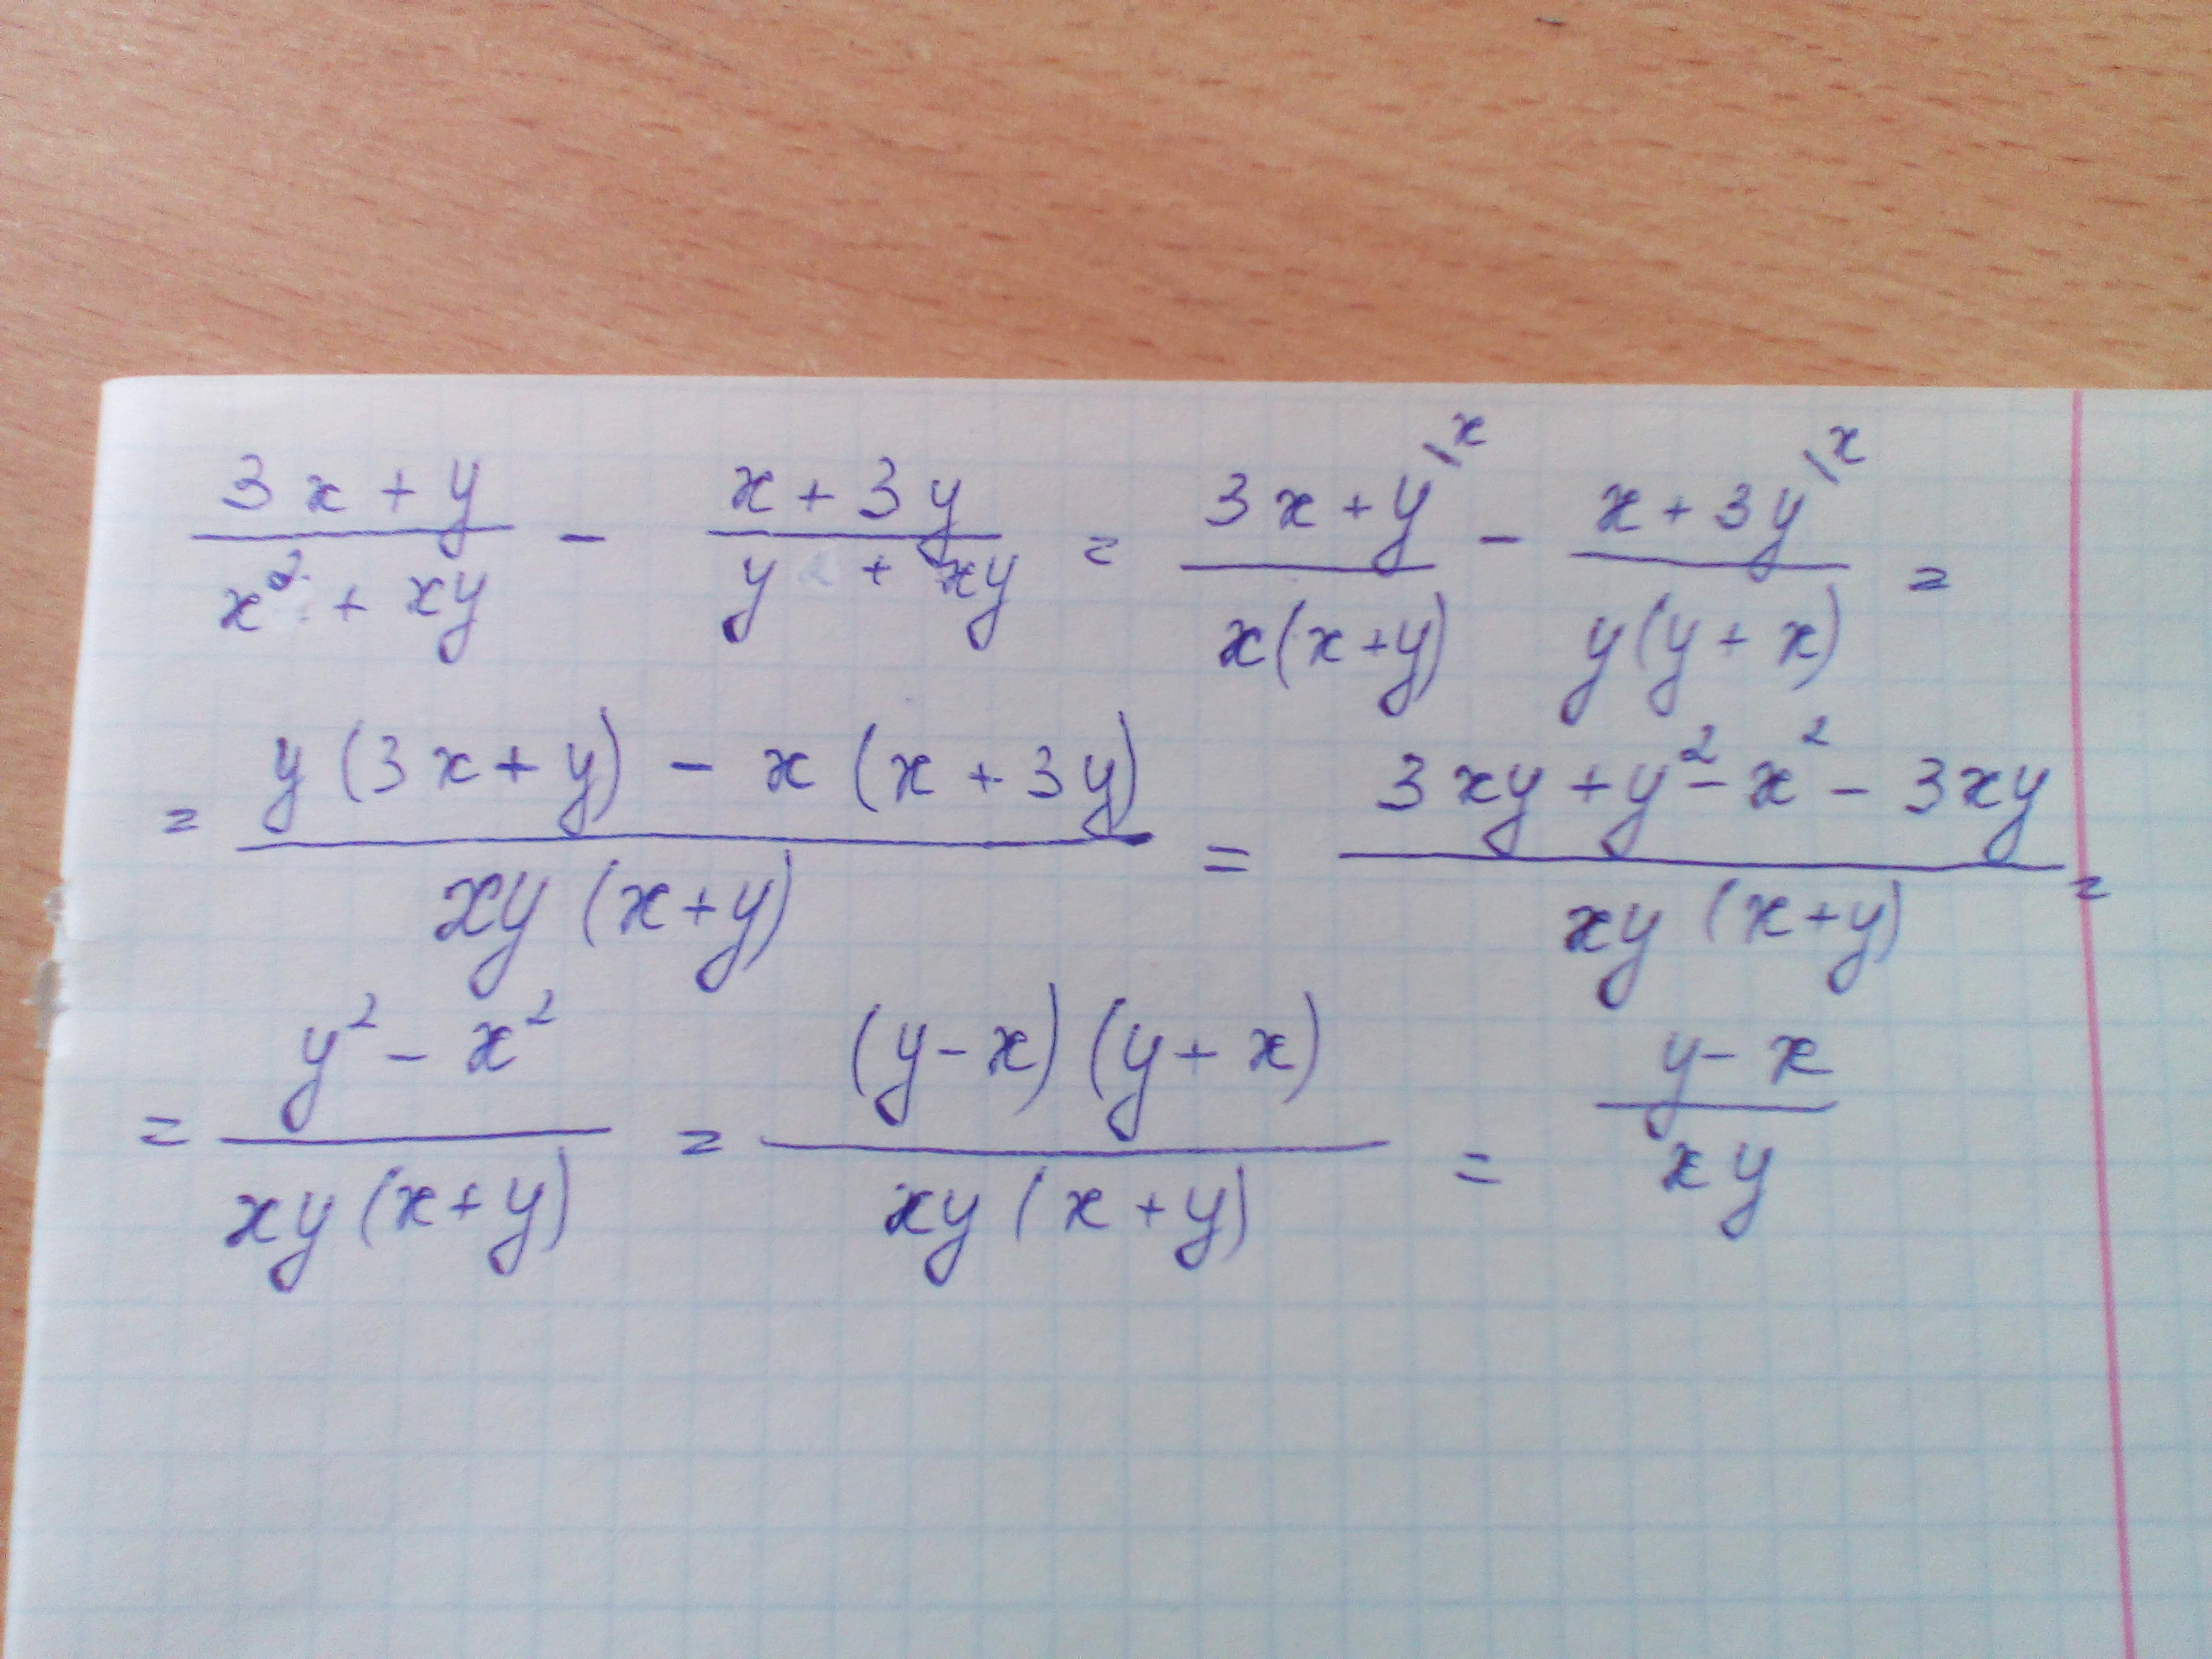 Выражение x2 2xy y2. X 2 +Y 2 =2x+2y+XY. Упростить выражение x^2-y^2/x^2-2xy+y^2. 3x+y/x2+XY-X+3y/y2+XY. 3x+y/x2+XY-X+3y/y2+XY упростите выражение.